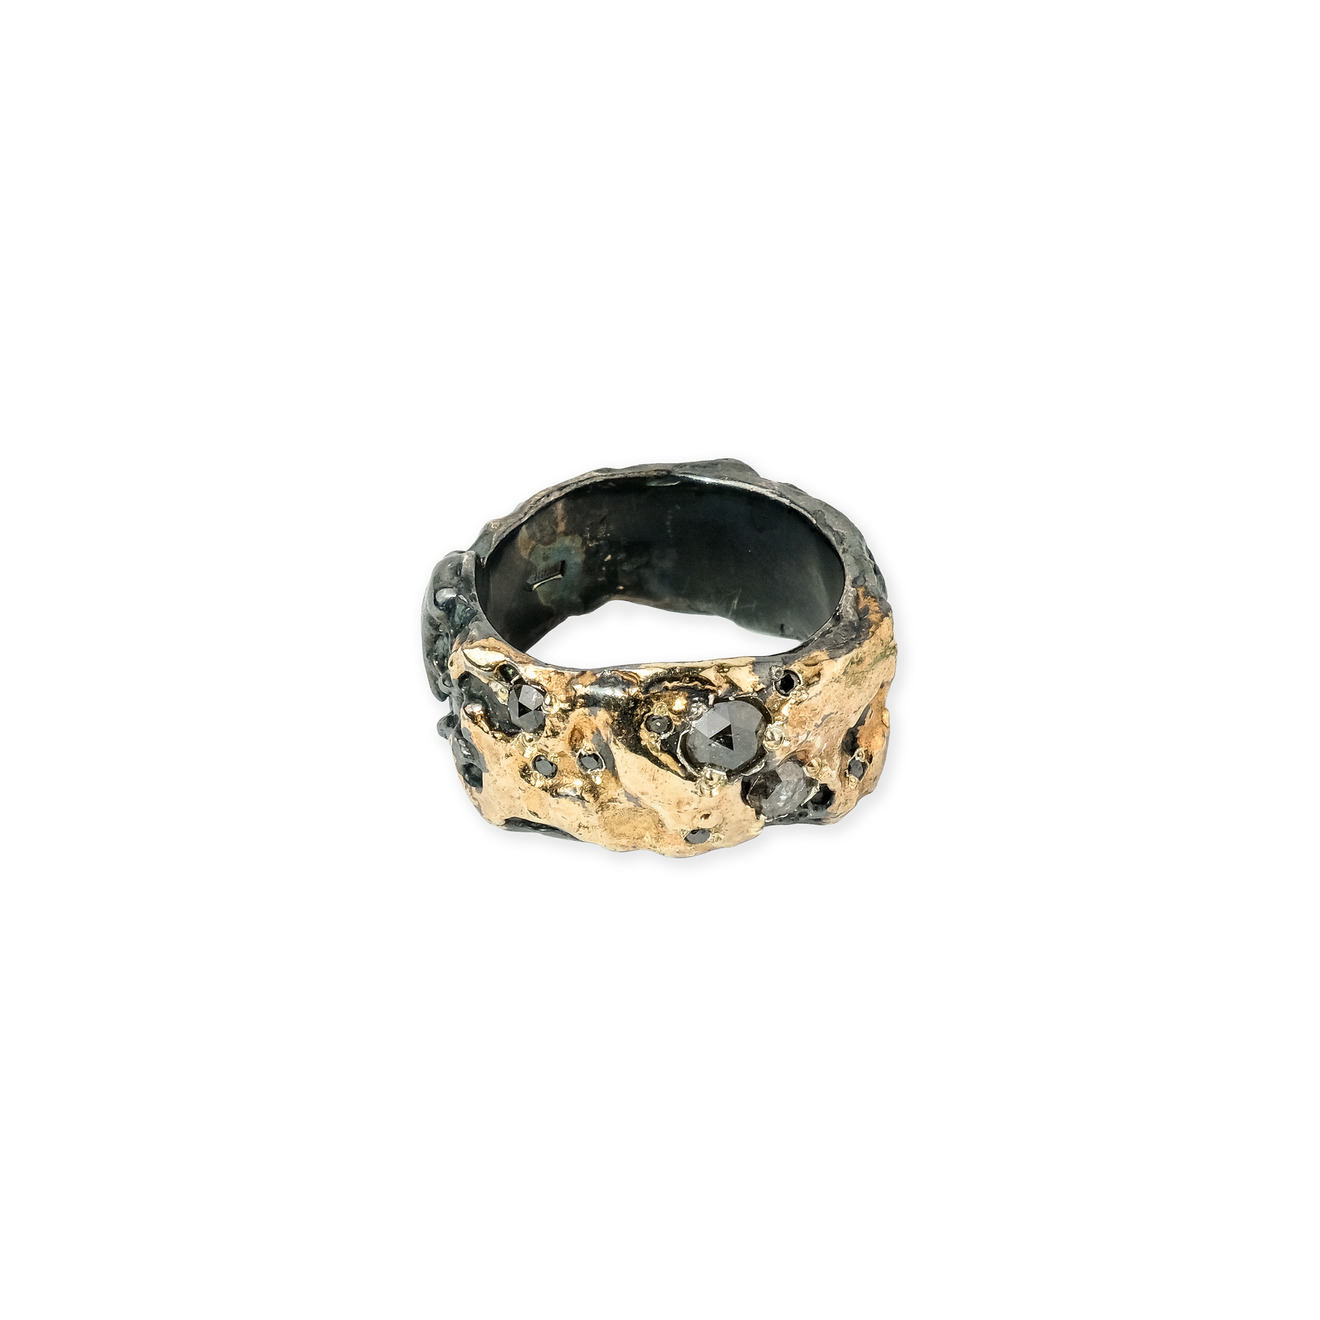 Kintsugi Jewelry Кольцо My way из серебра с позолотой и бриллиантами liya кольцо с позолотой и вставками из эмали